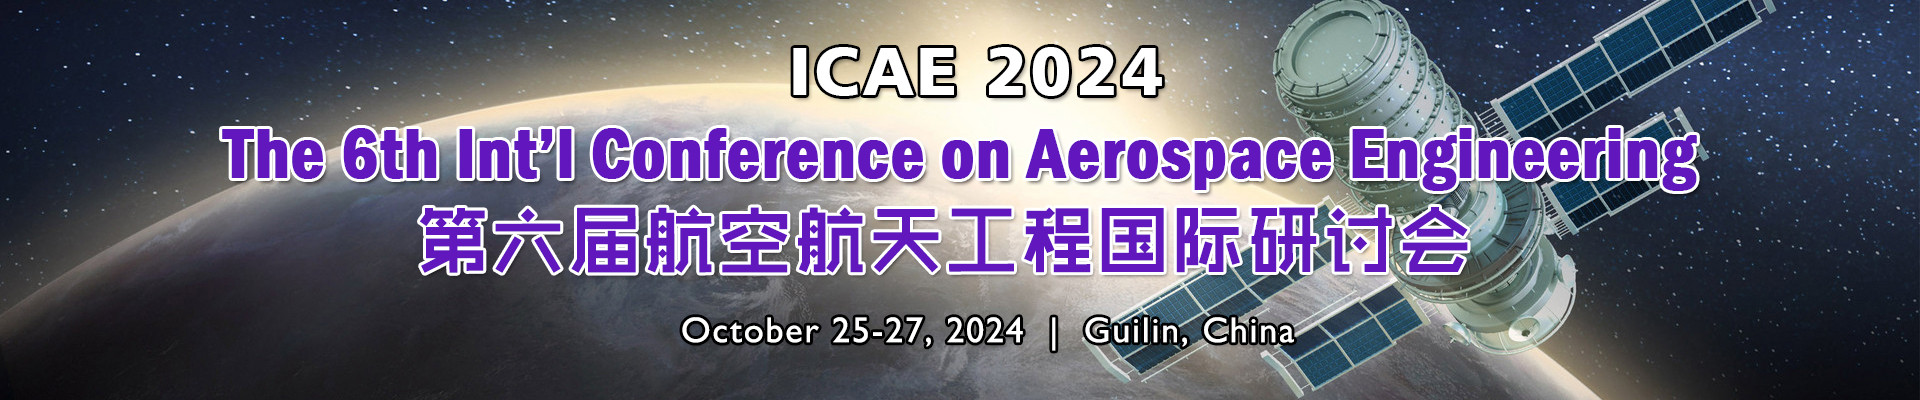 第六届航空航天工程国际研讨会(ICAE 2024)